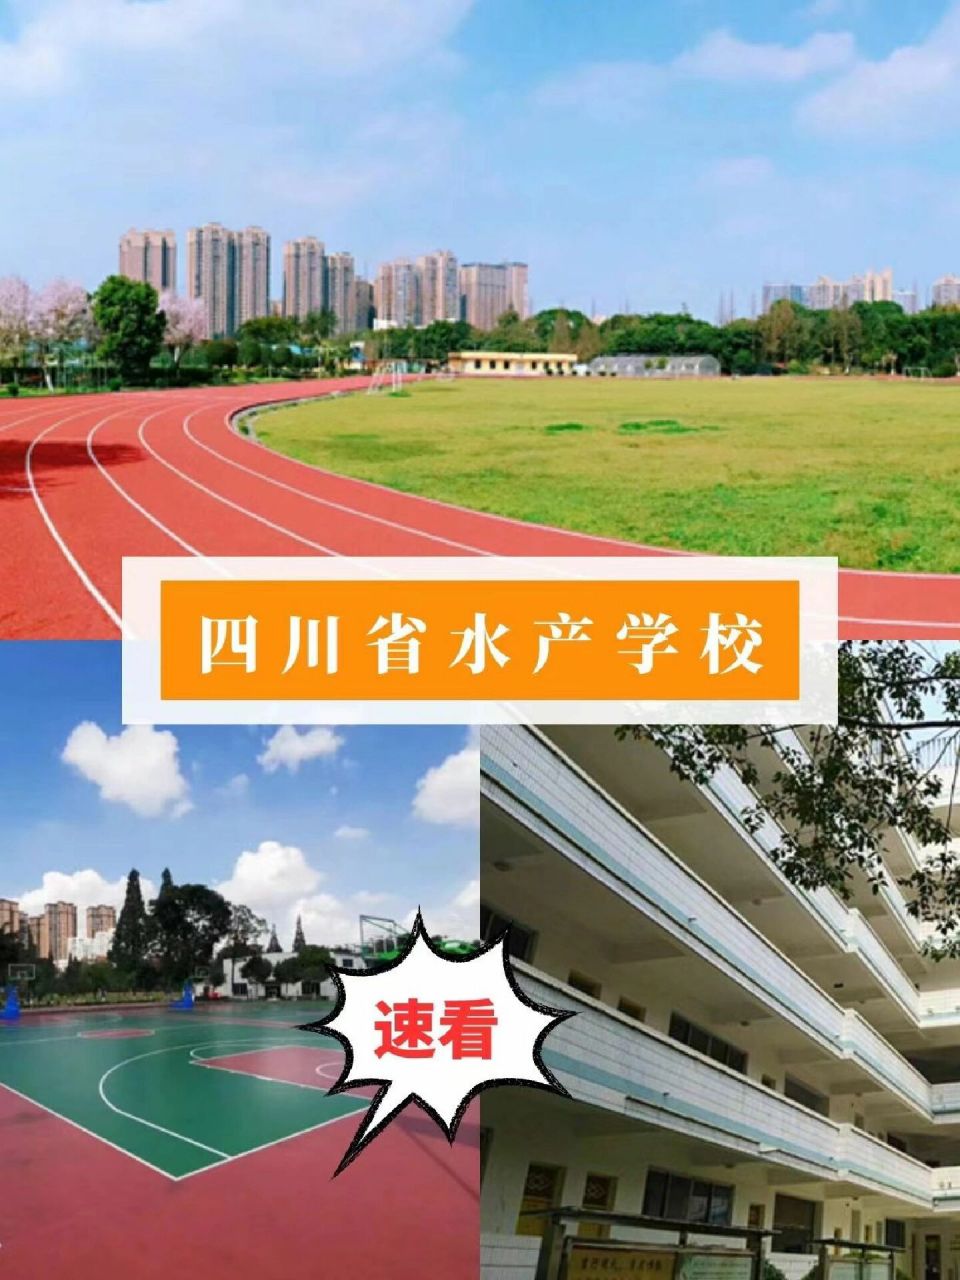 93四川省水产学校,建于1959年,1993年被评为省级重点中专,2000